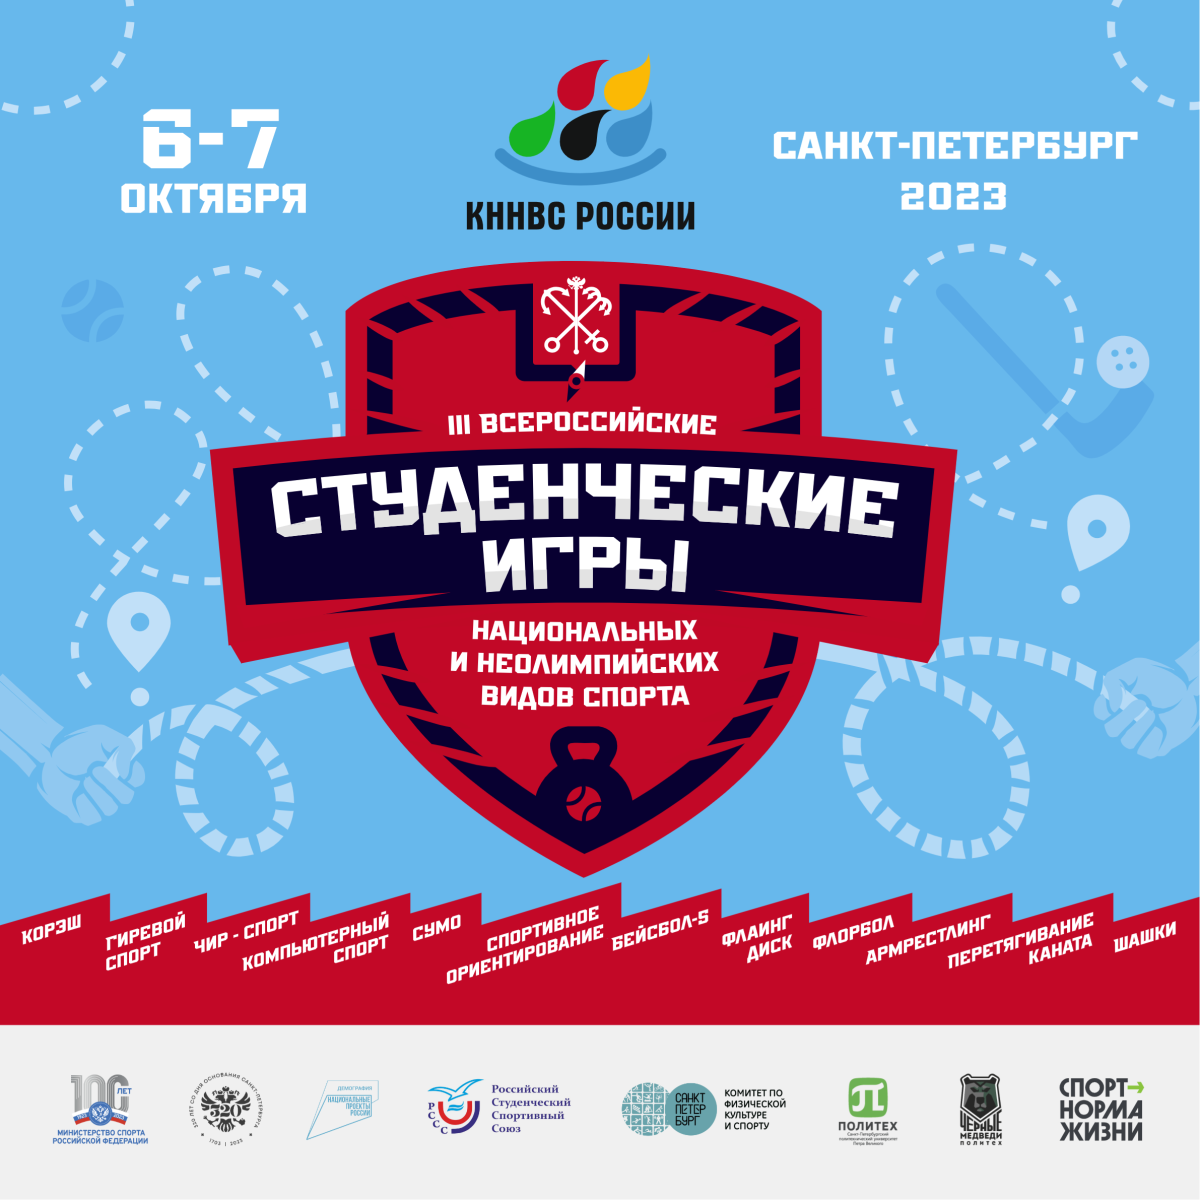 С 6 по 7 октября пройдут III Всероссийские студенческие игры национальных и неолимпийских видов спорта